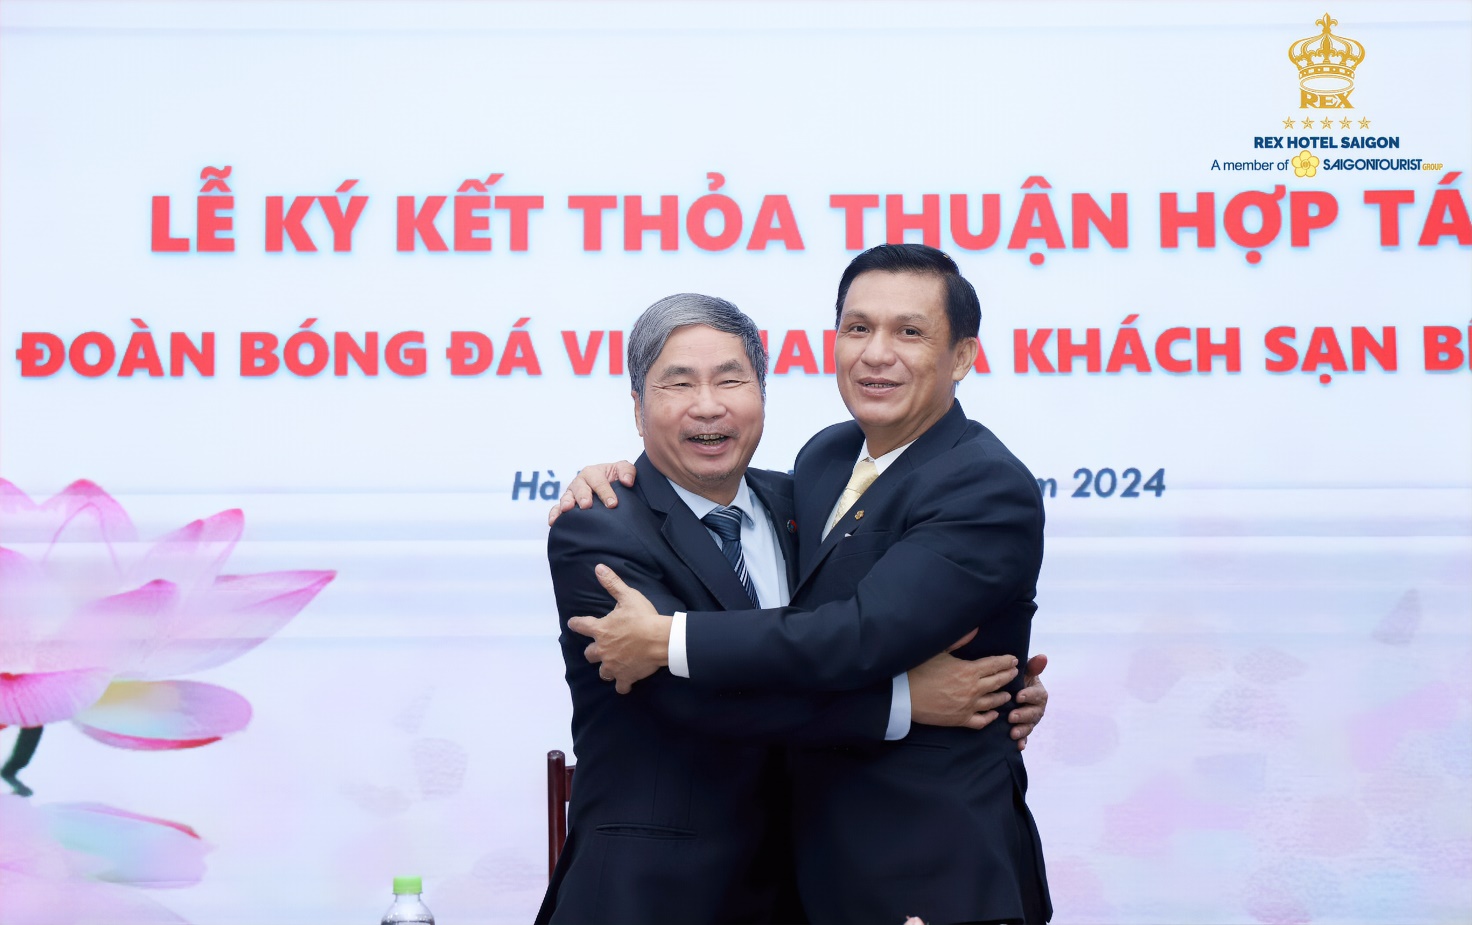 Lễ ký kết thỏa thuận hợp tác giữa Liên Đoàn Bóng Đá Việt Nam và khách sạn Rex Sài Gòn - Ảnh 2.